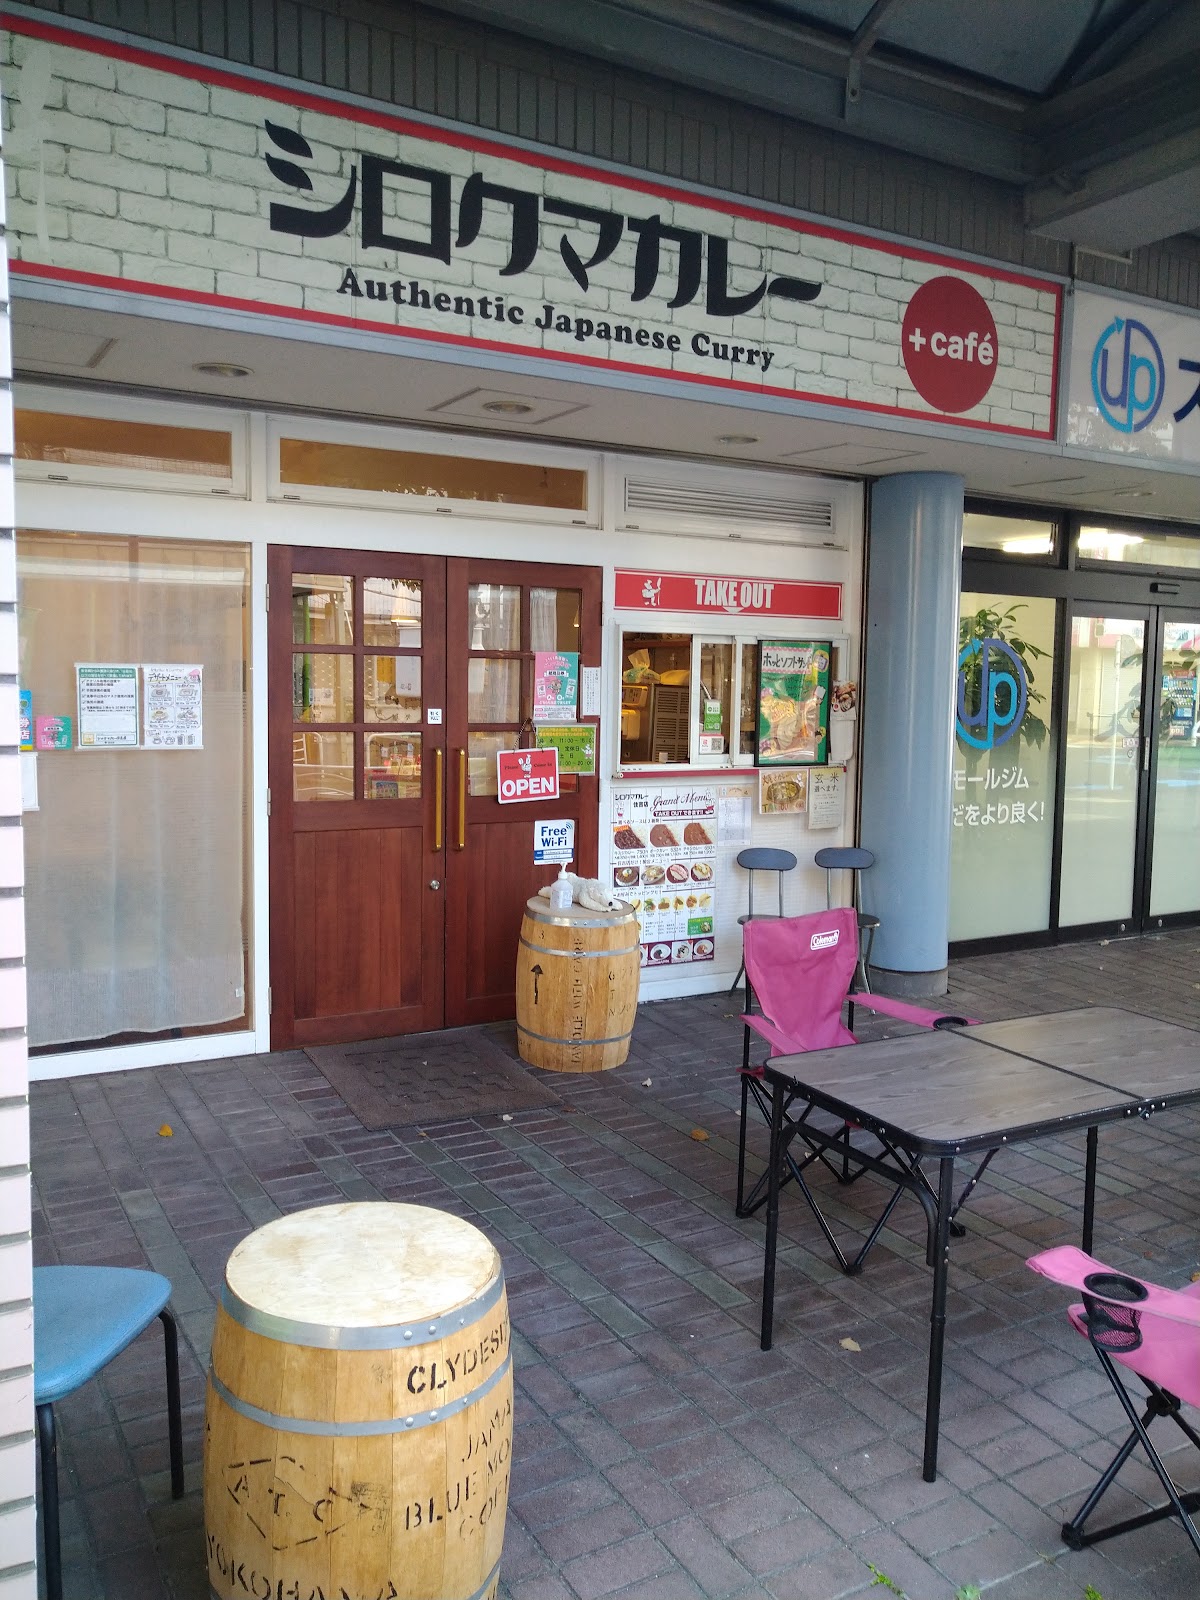 シロクマカレー + cafe 住吉店の風景